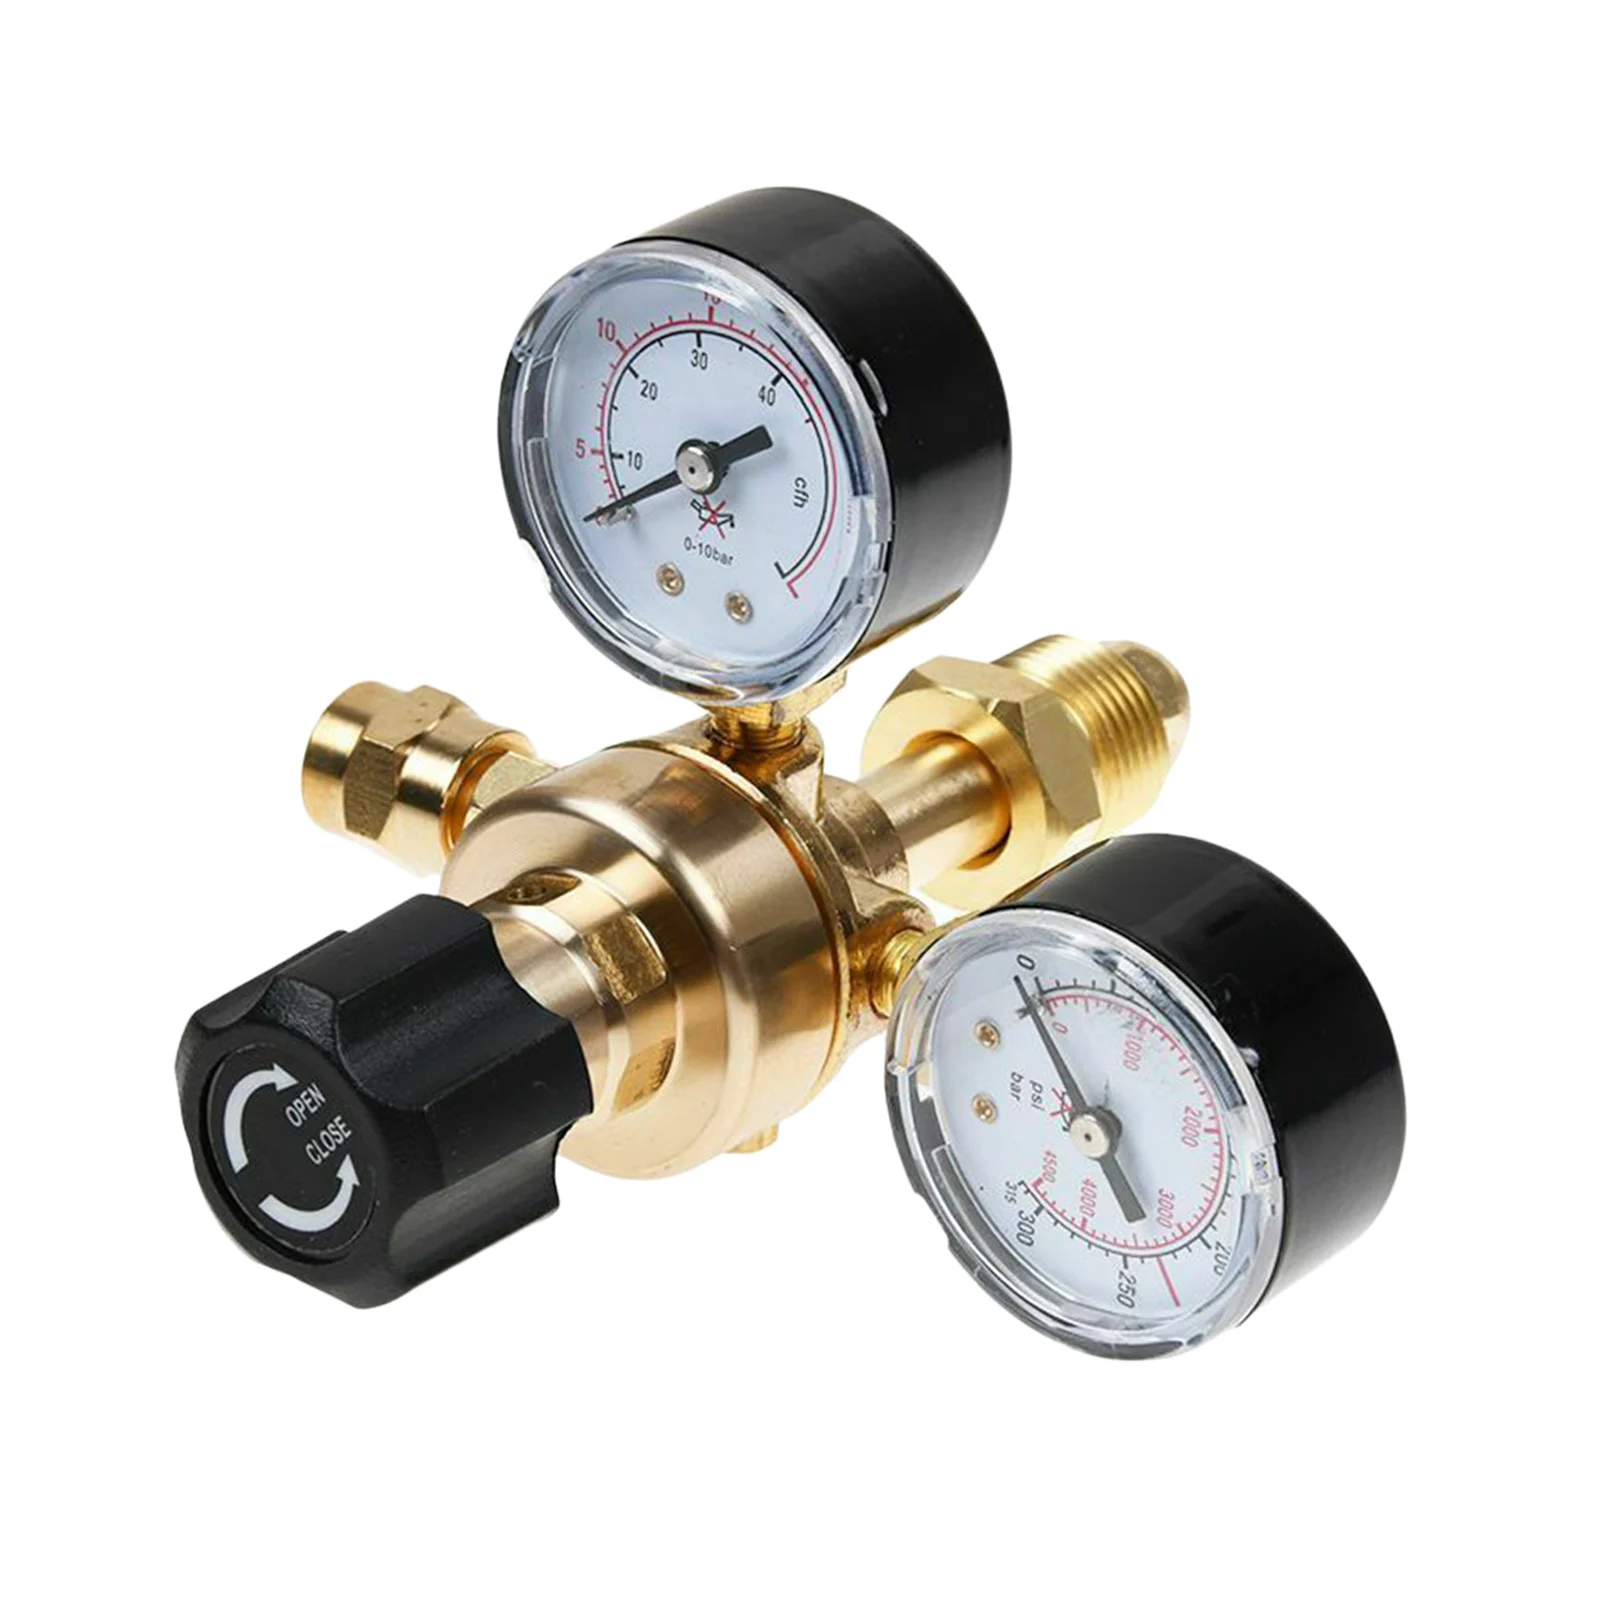 New Flow Meter Pressure Regulator Argon CO2 Pressure Reducer Pressure Reducing Valve Welding Gas Welder, Black